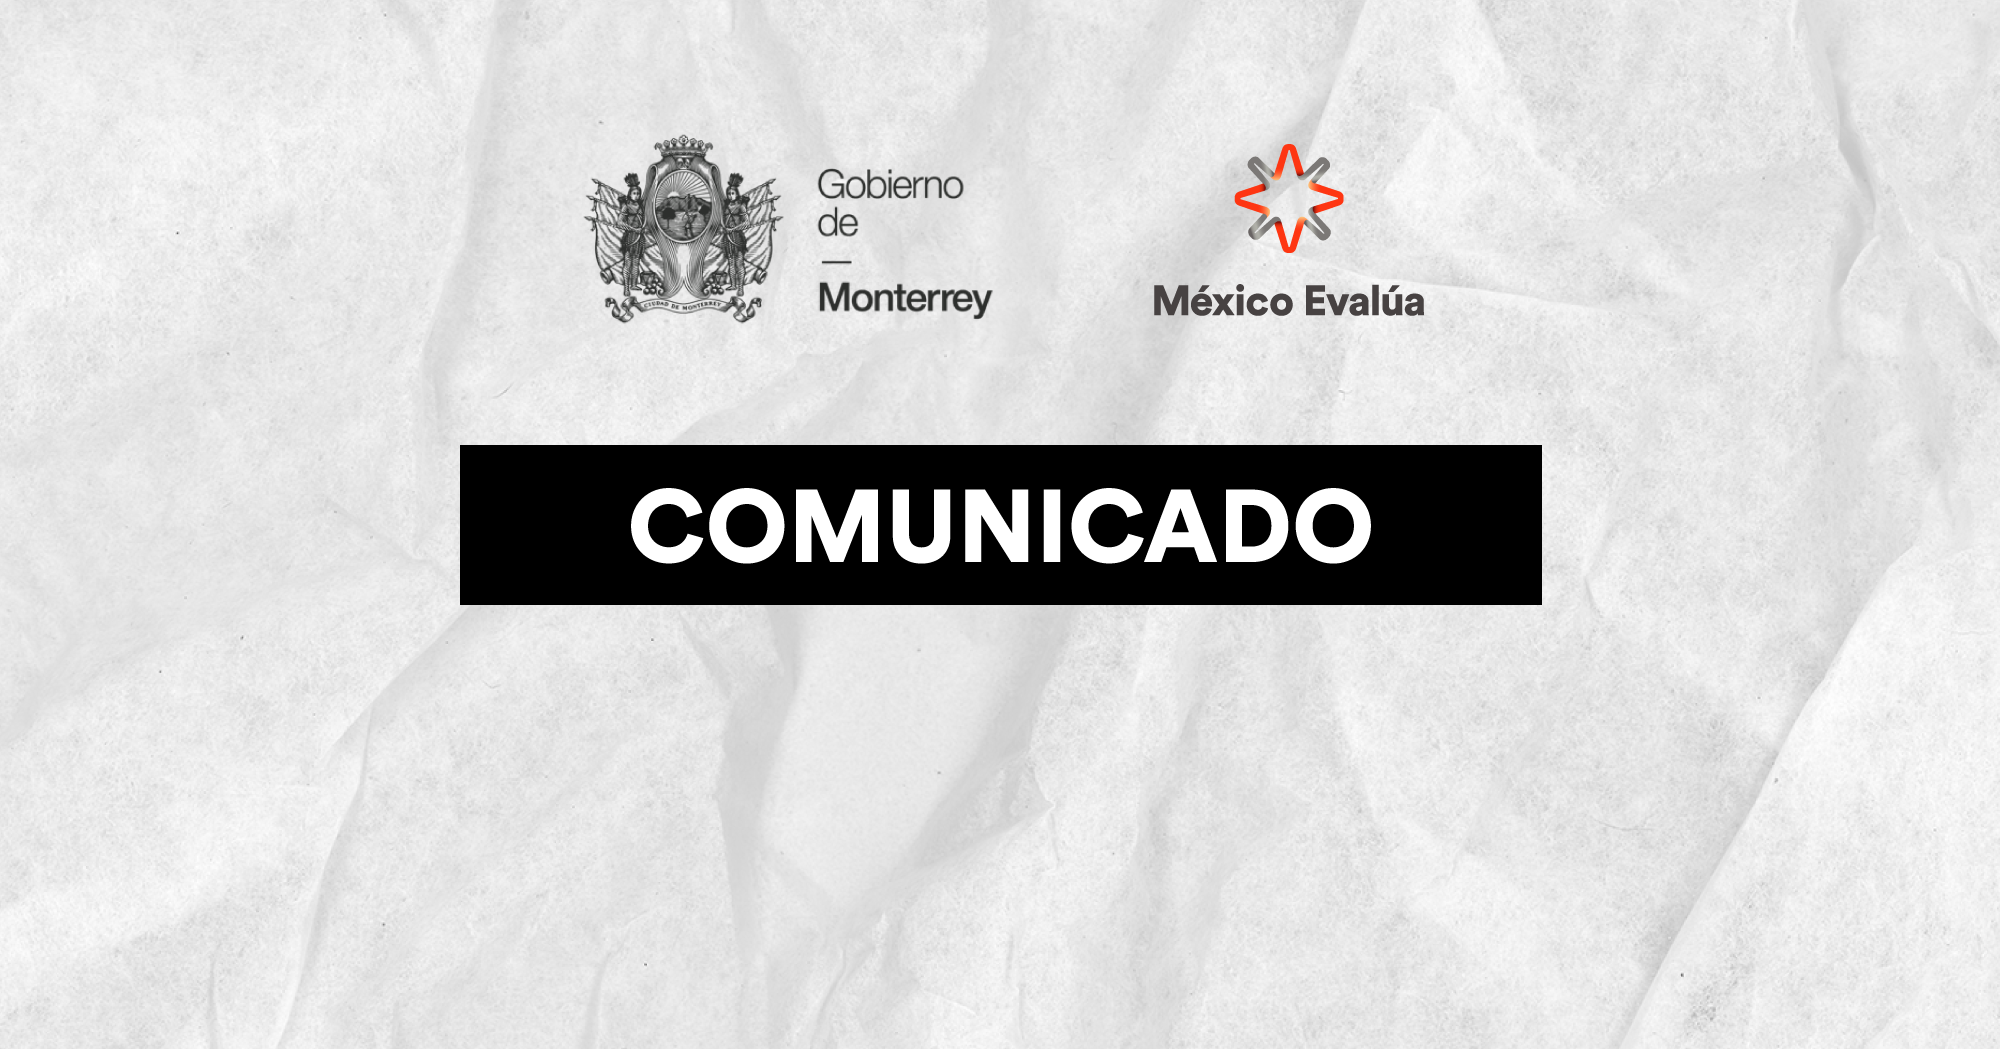 Se Unen El Gobierno De Monterrey Y México Evalúa Para El Mejoramiento De La Policía Municipal 0824